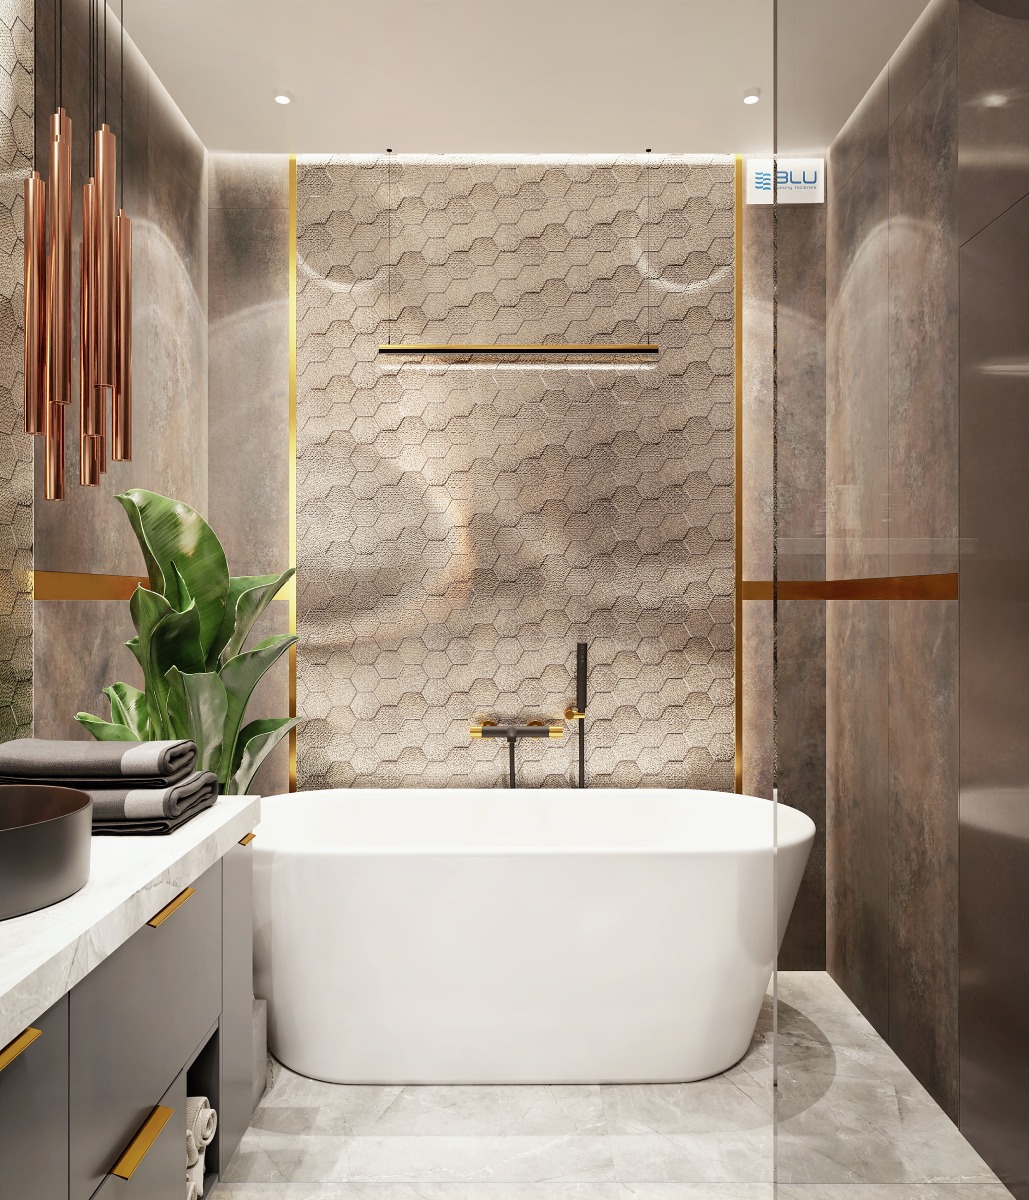 Nowoczesna łazienka z heksagonalną mozaiką.